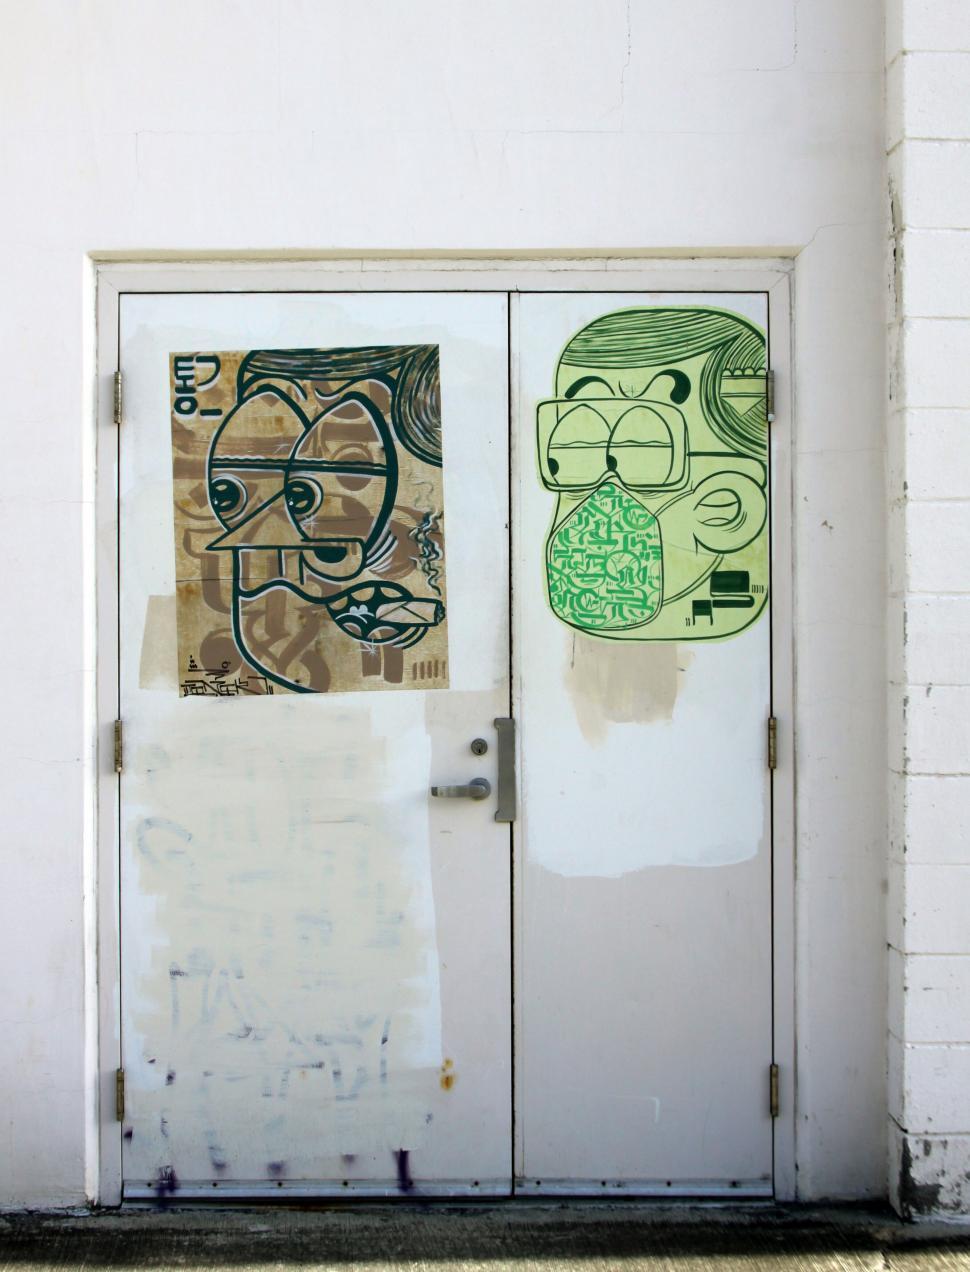 Free Image of Graffiti art on a pair of urban doors 